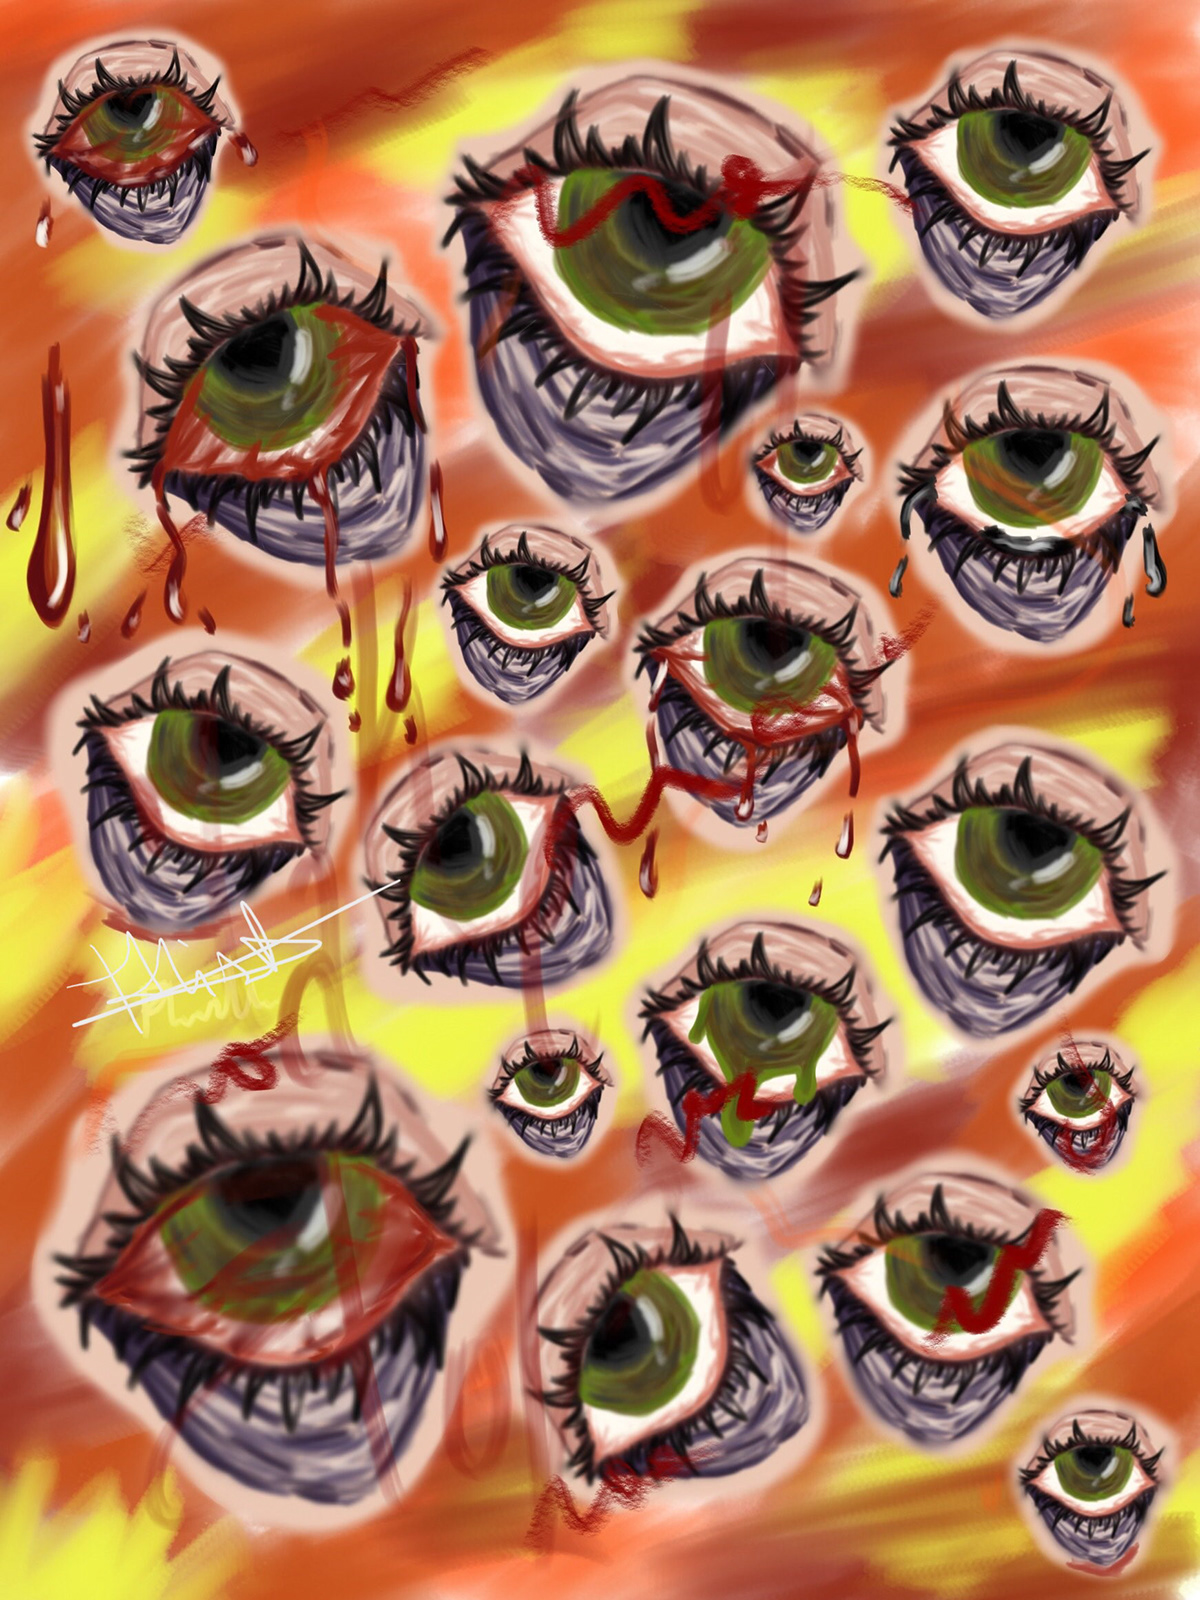 ILLUSTRATION  Horror Art artwork artist painting   creepy eyes digital illustration art red